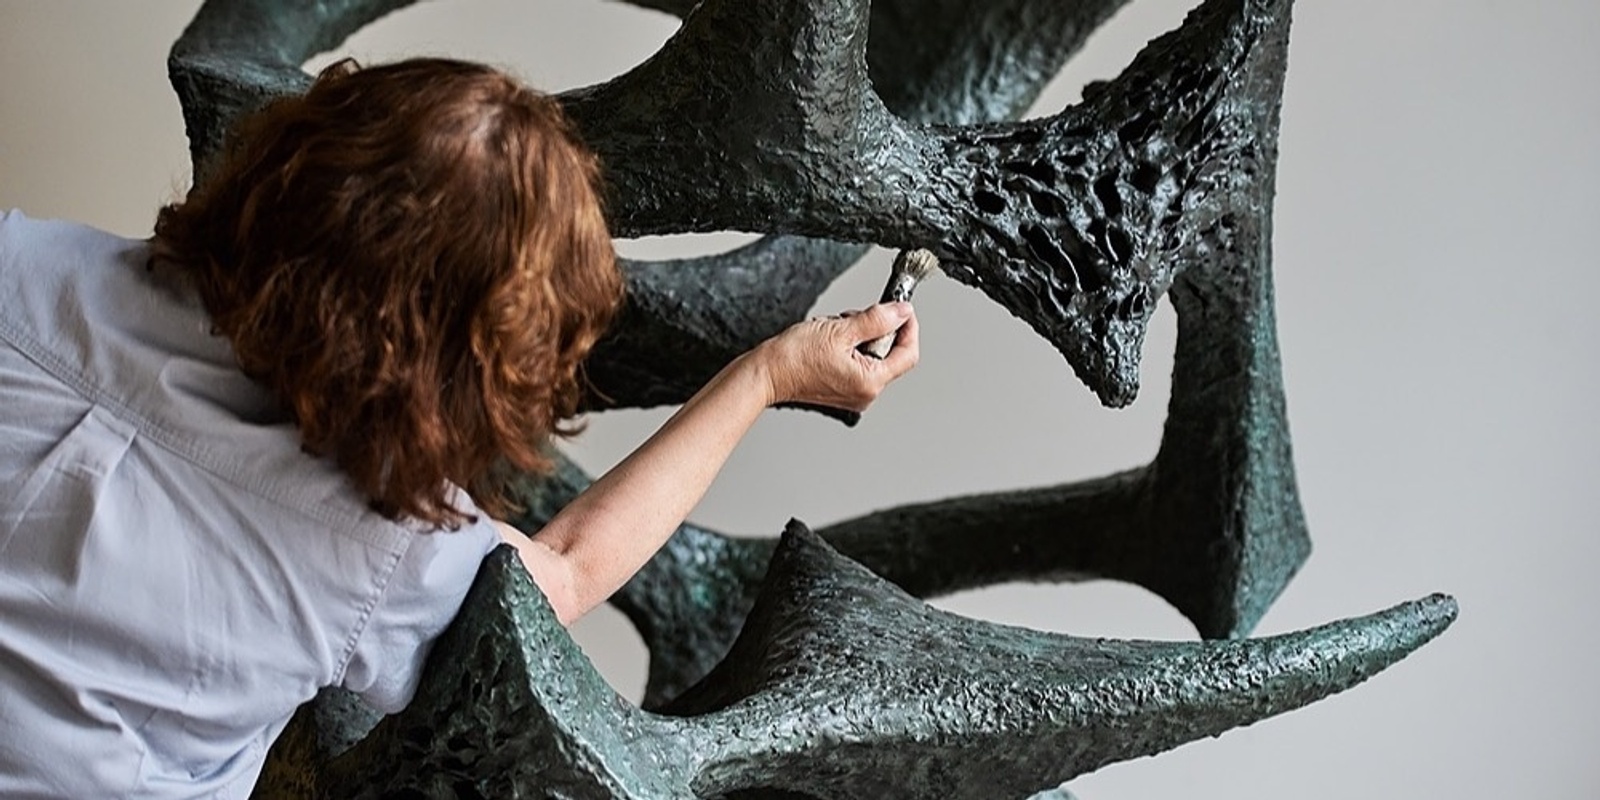 Artist Talk: She Speaks in Sculpture 